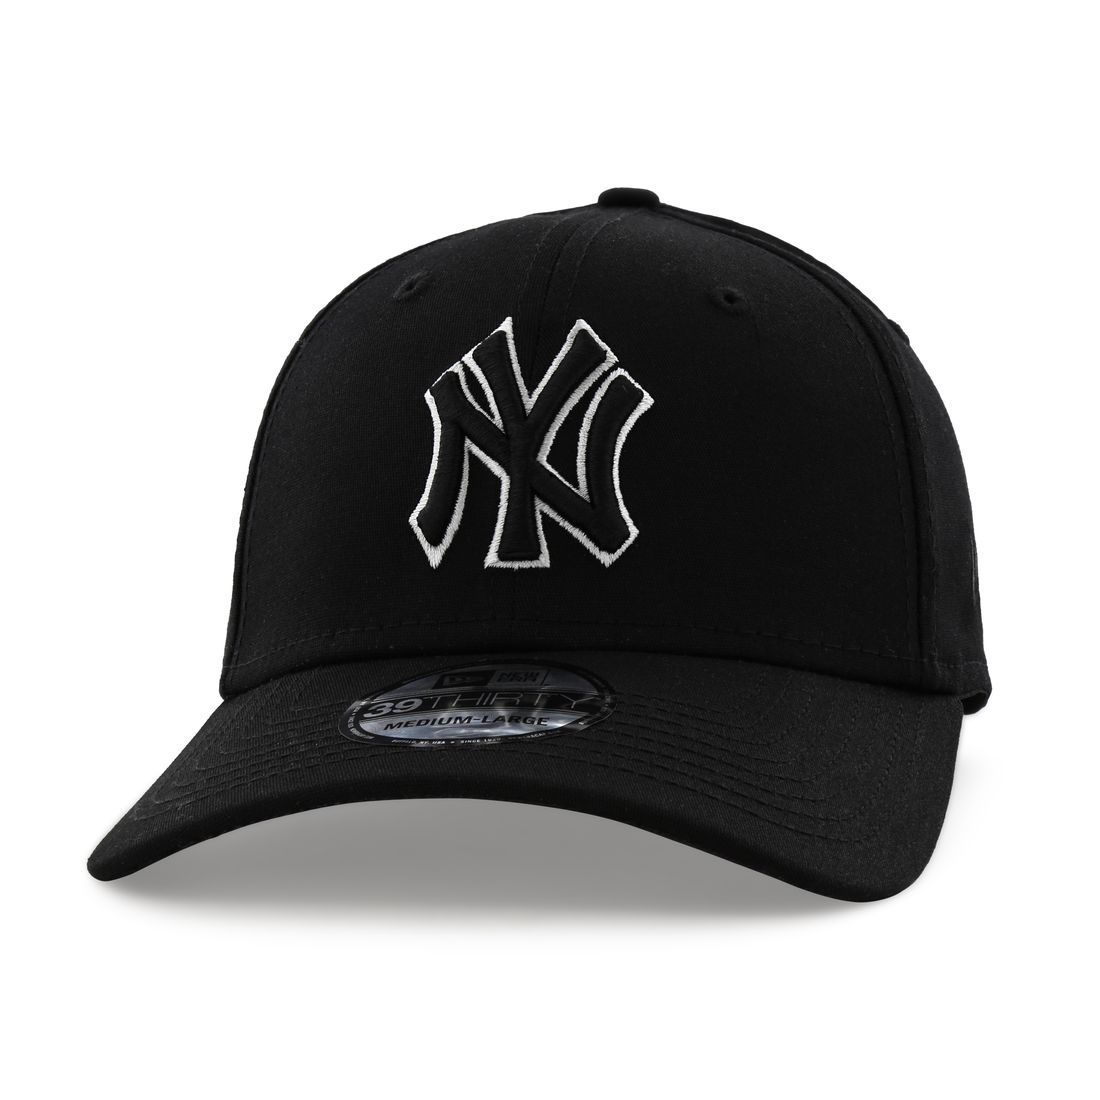 قبعة للرجال تحمل علامة لفريق يانكيز نيويورك بلون متناغم من نيو إيرا لون أسود M/L